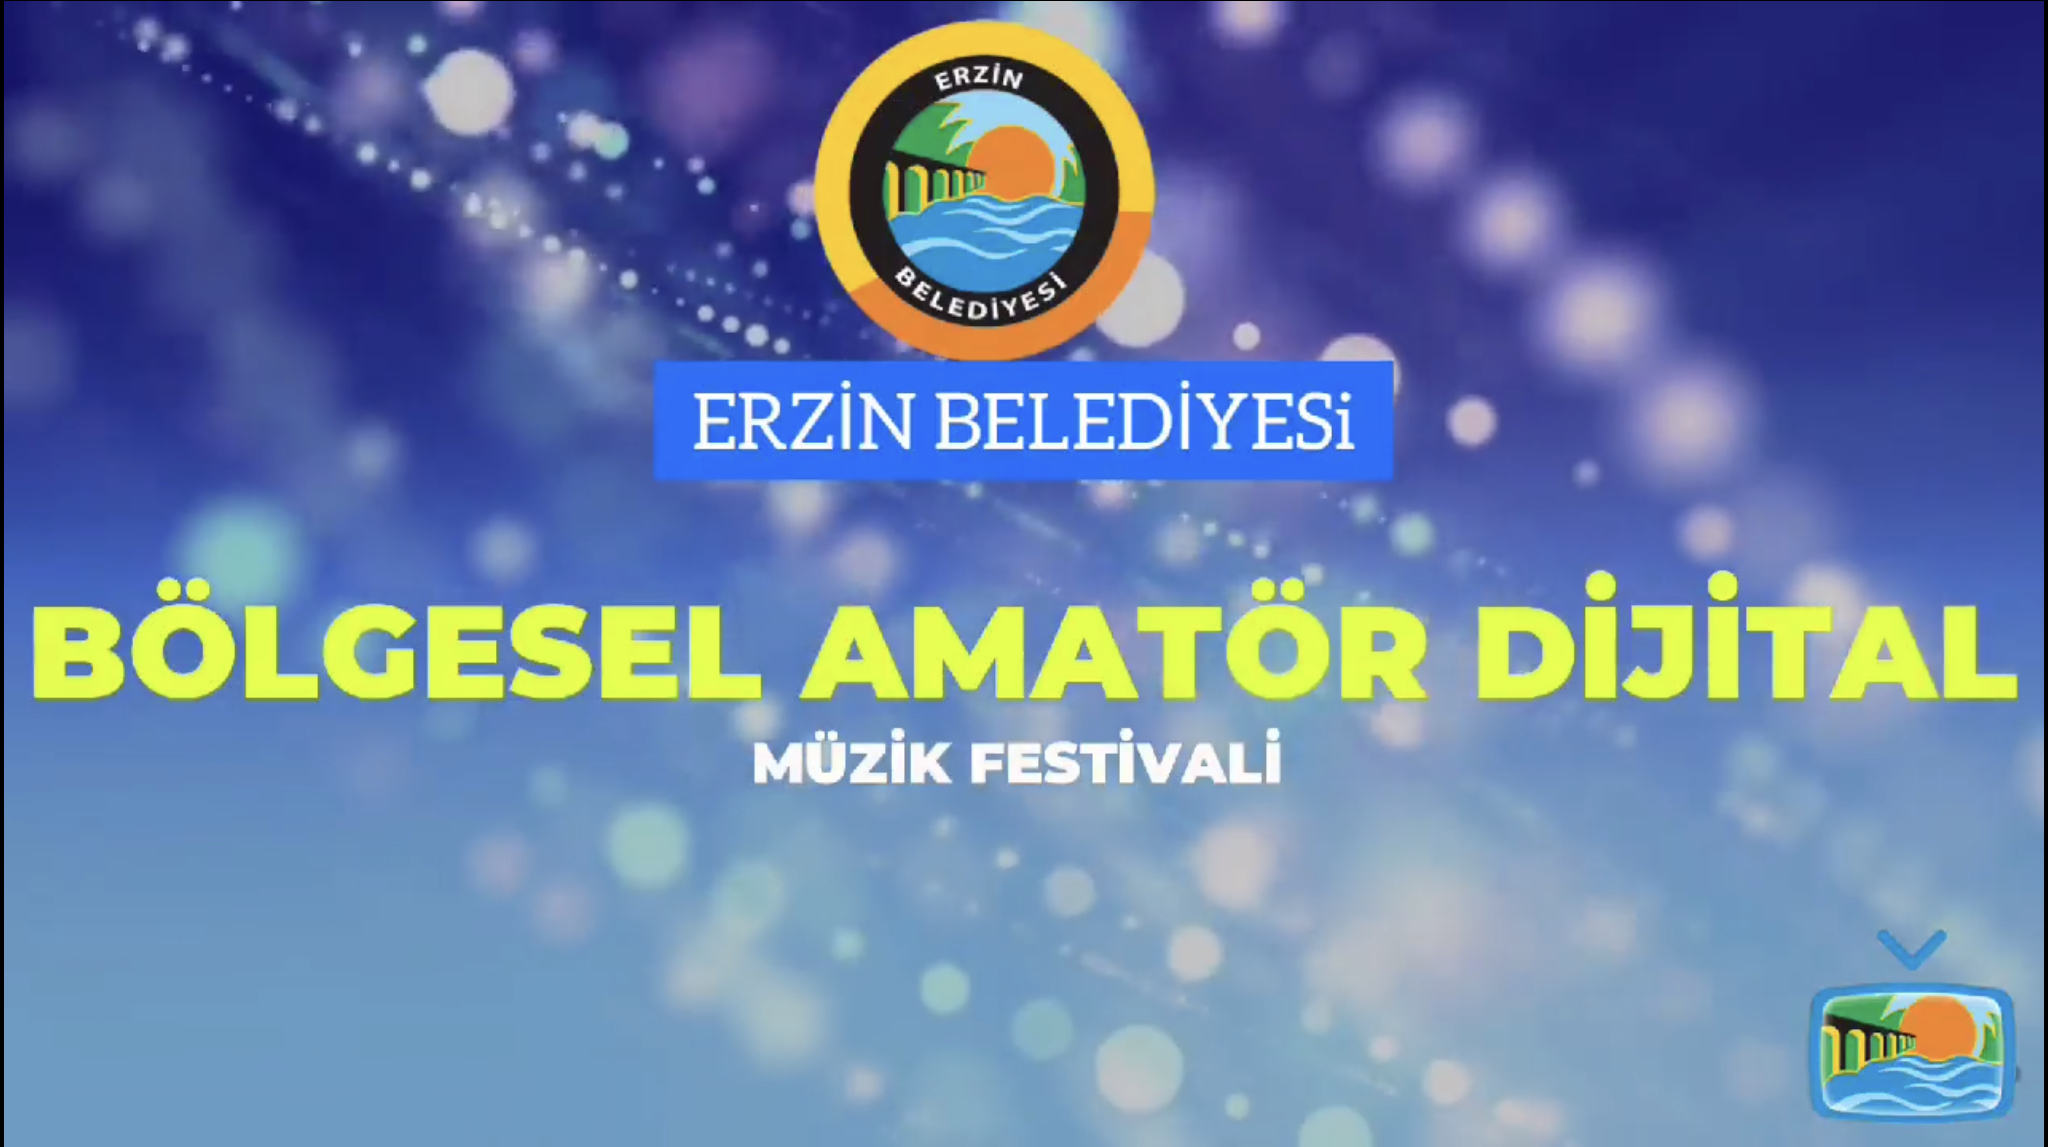 Erzin Belediyesi Bölgesel Amatör Dijital Müzik Festivali